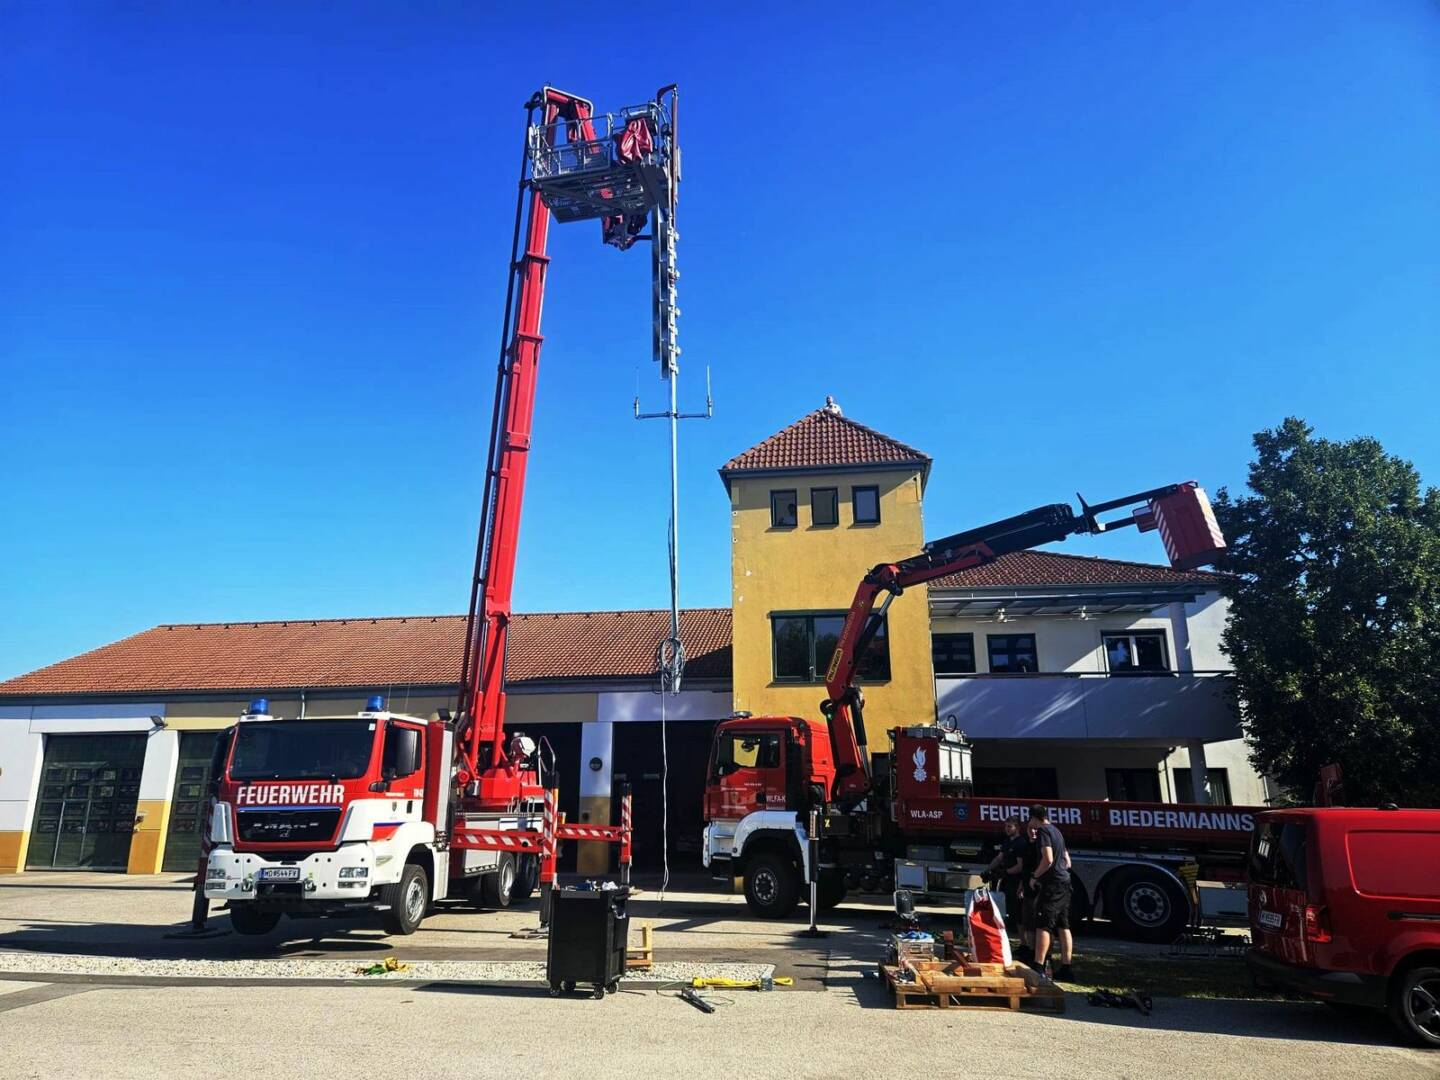 Blackoutprävention - Neue, autarke Sirene auf Feuerwehrhaus montiert